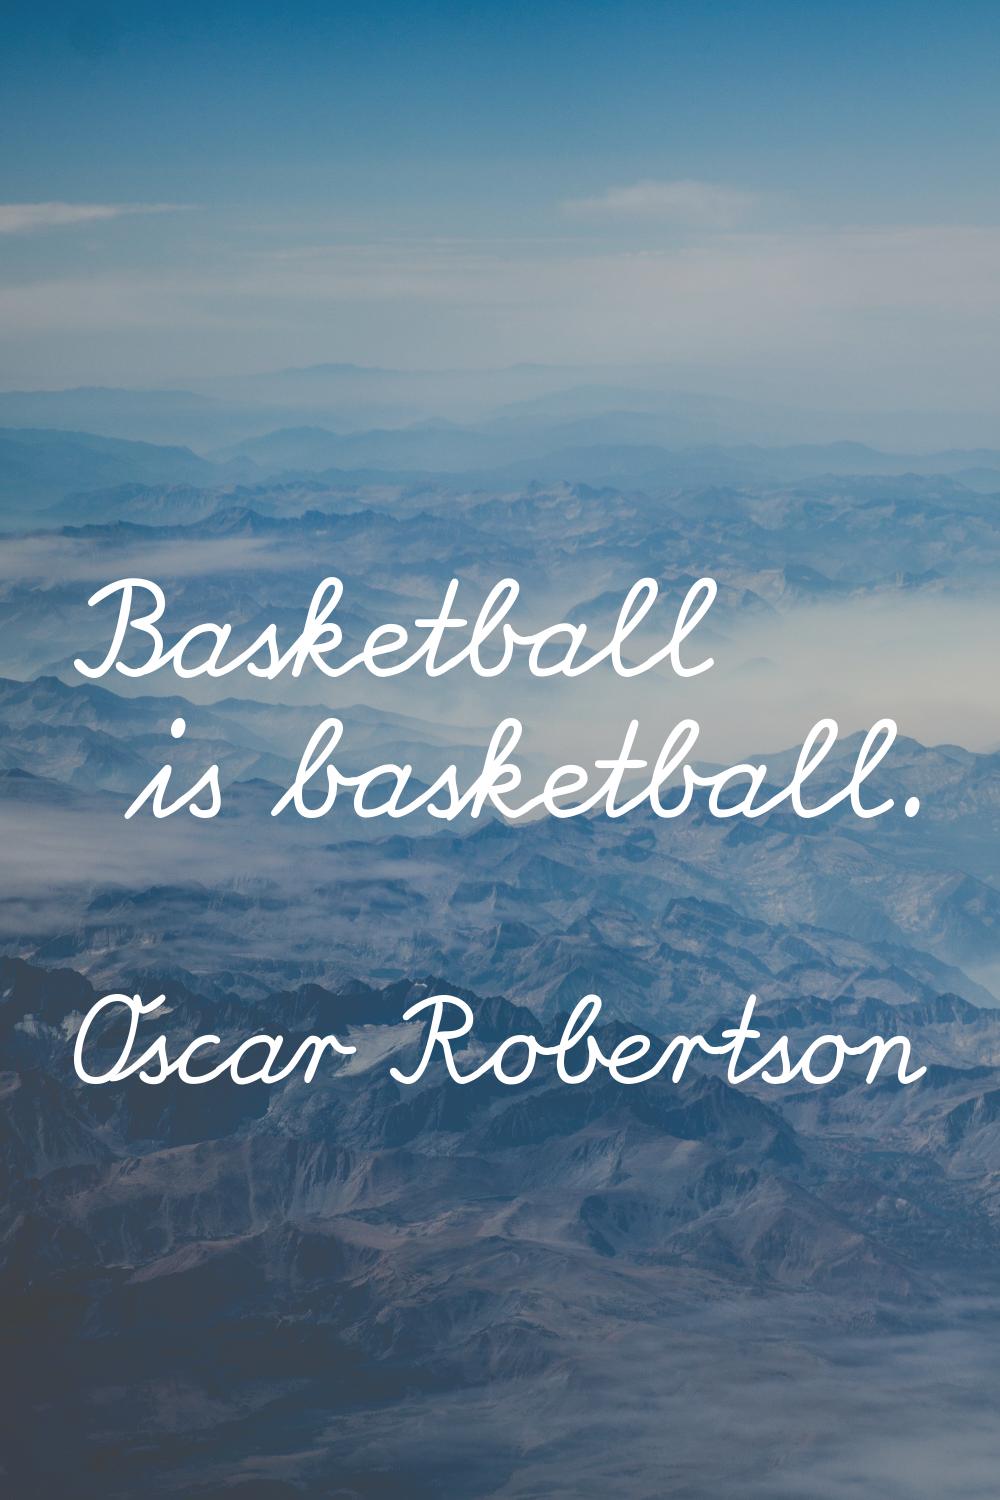 Basketball is basketball.